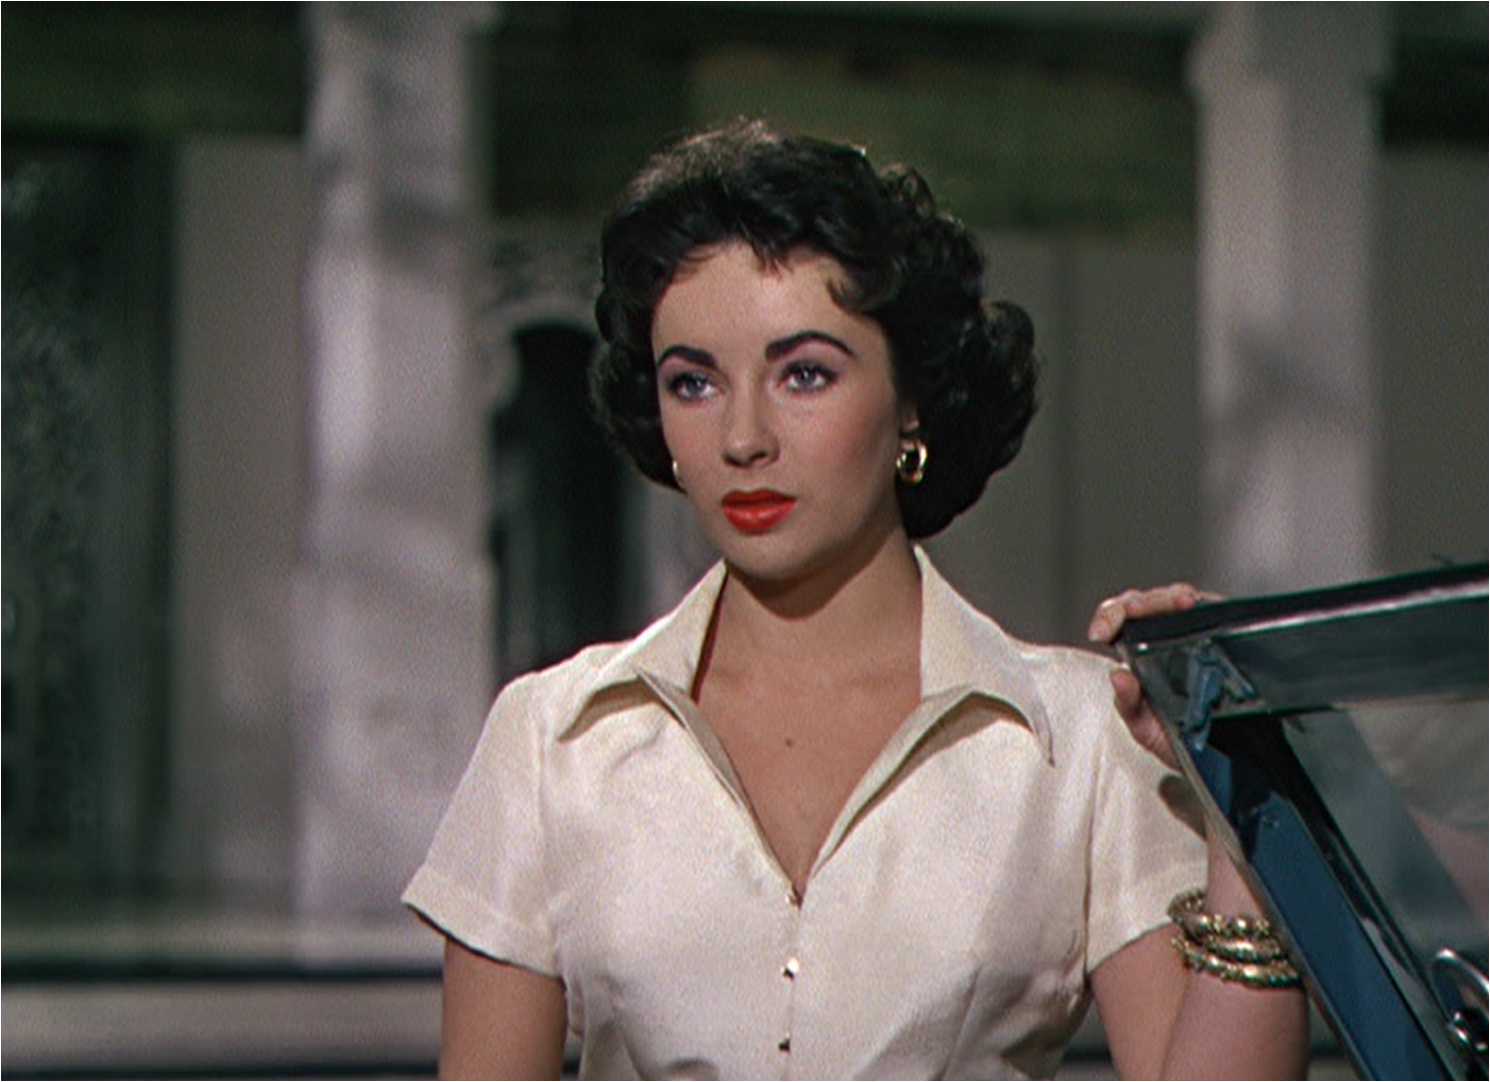 エリザベス・テイラーの『巨象の道』(1954) | 映画女優のエレガントな世界